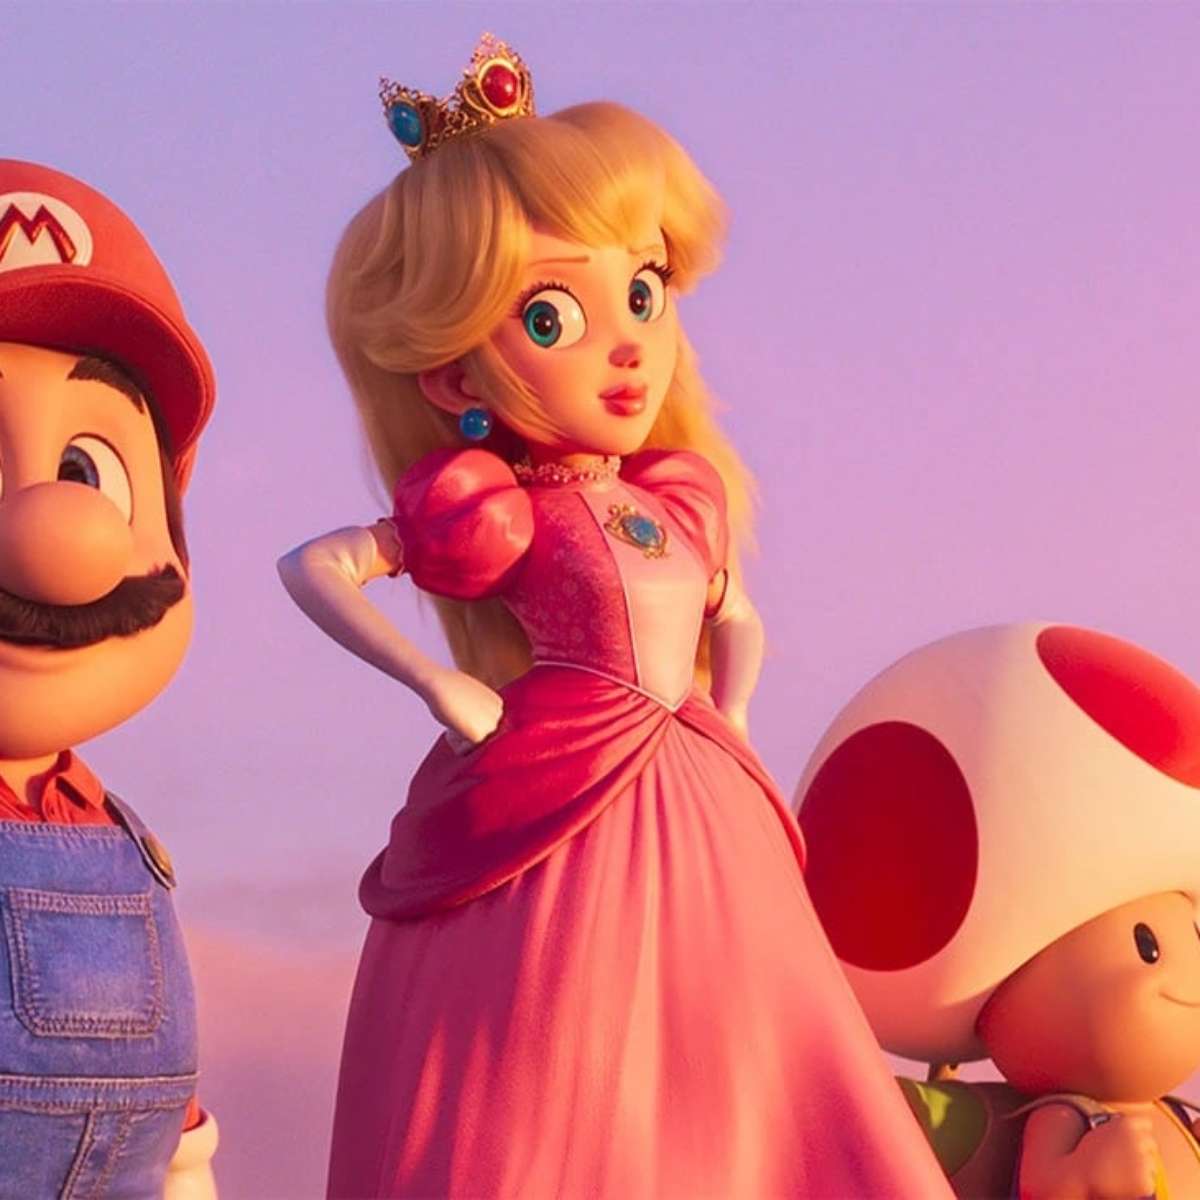 Um novo Super Mario é anunciado e ganha data de lançamento